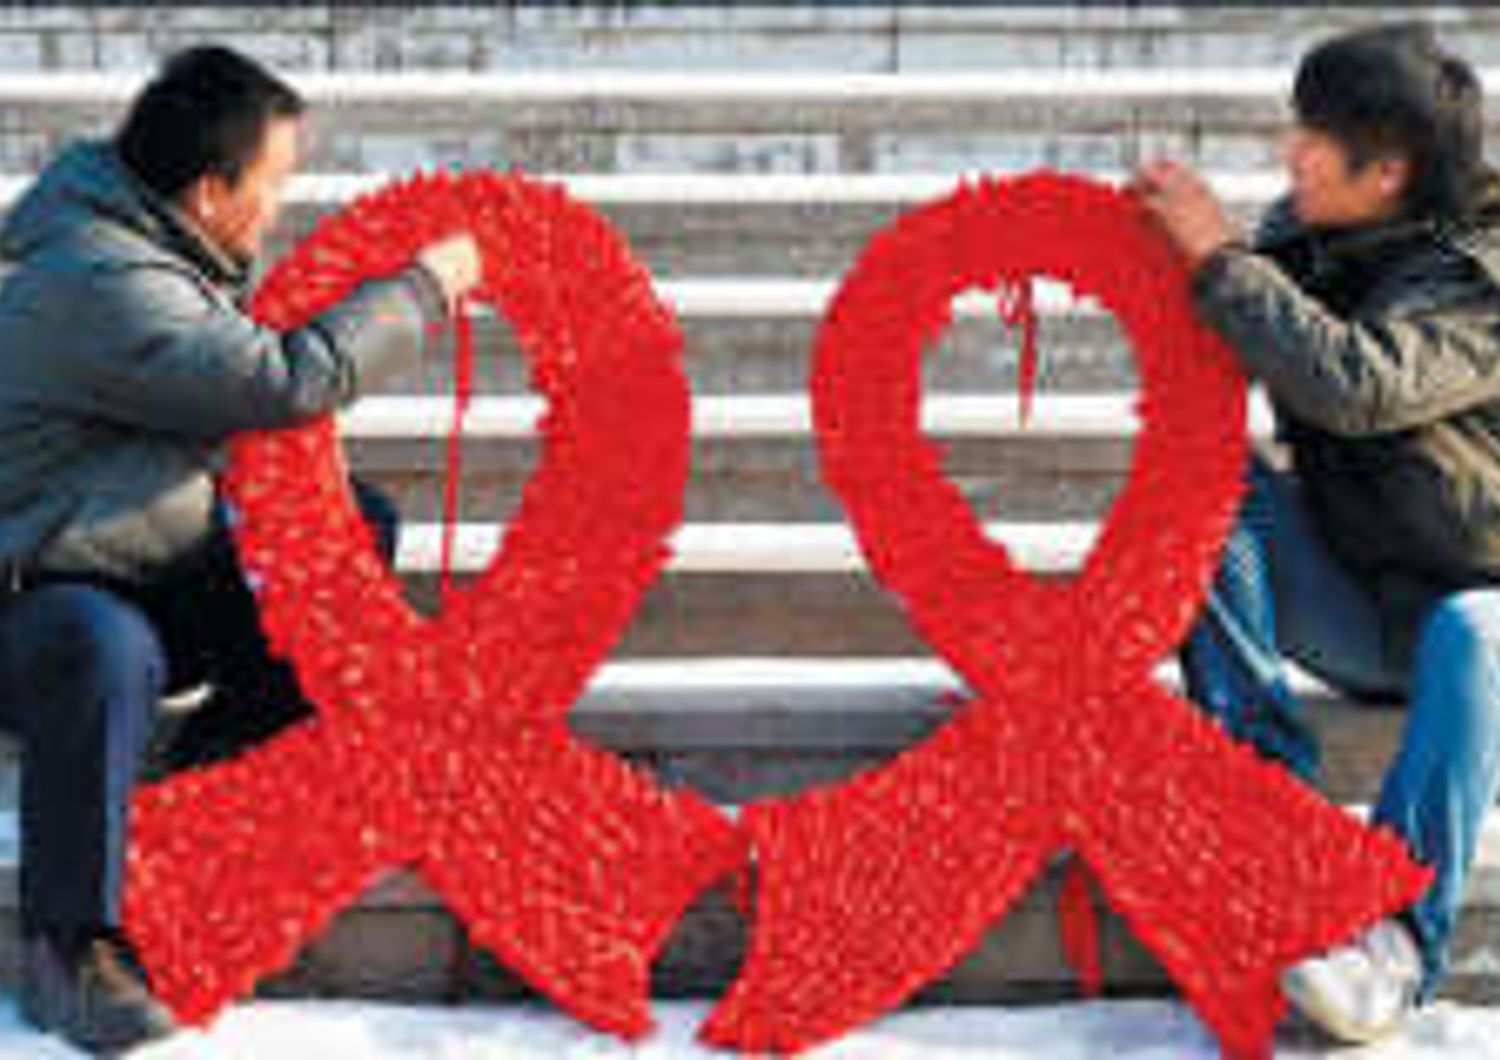 PORTE APERTE AI MALATI DI AIDS